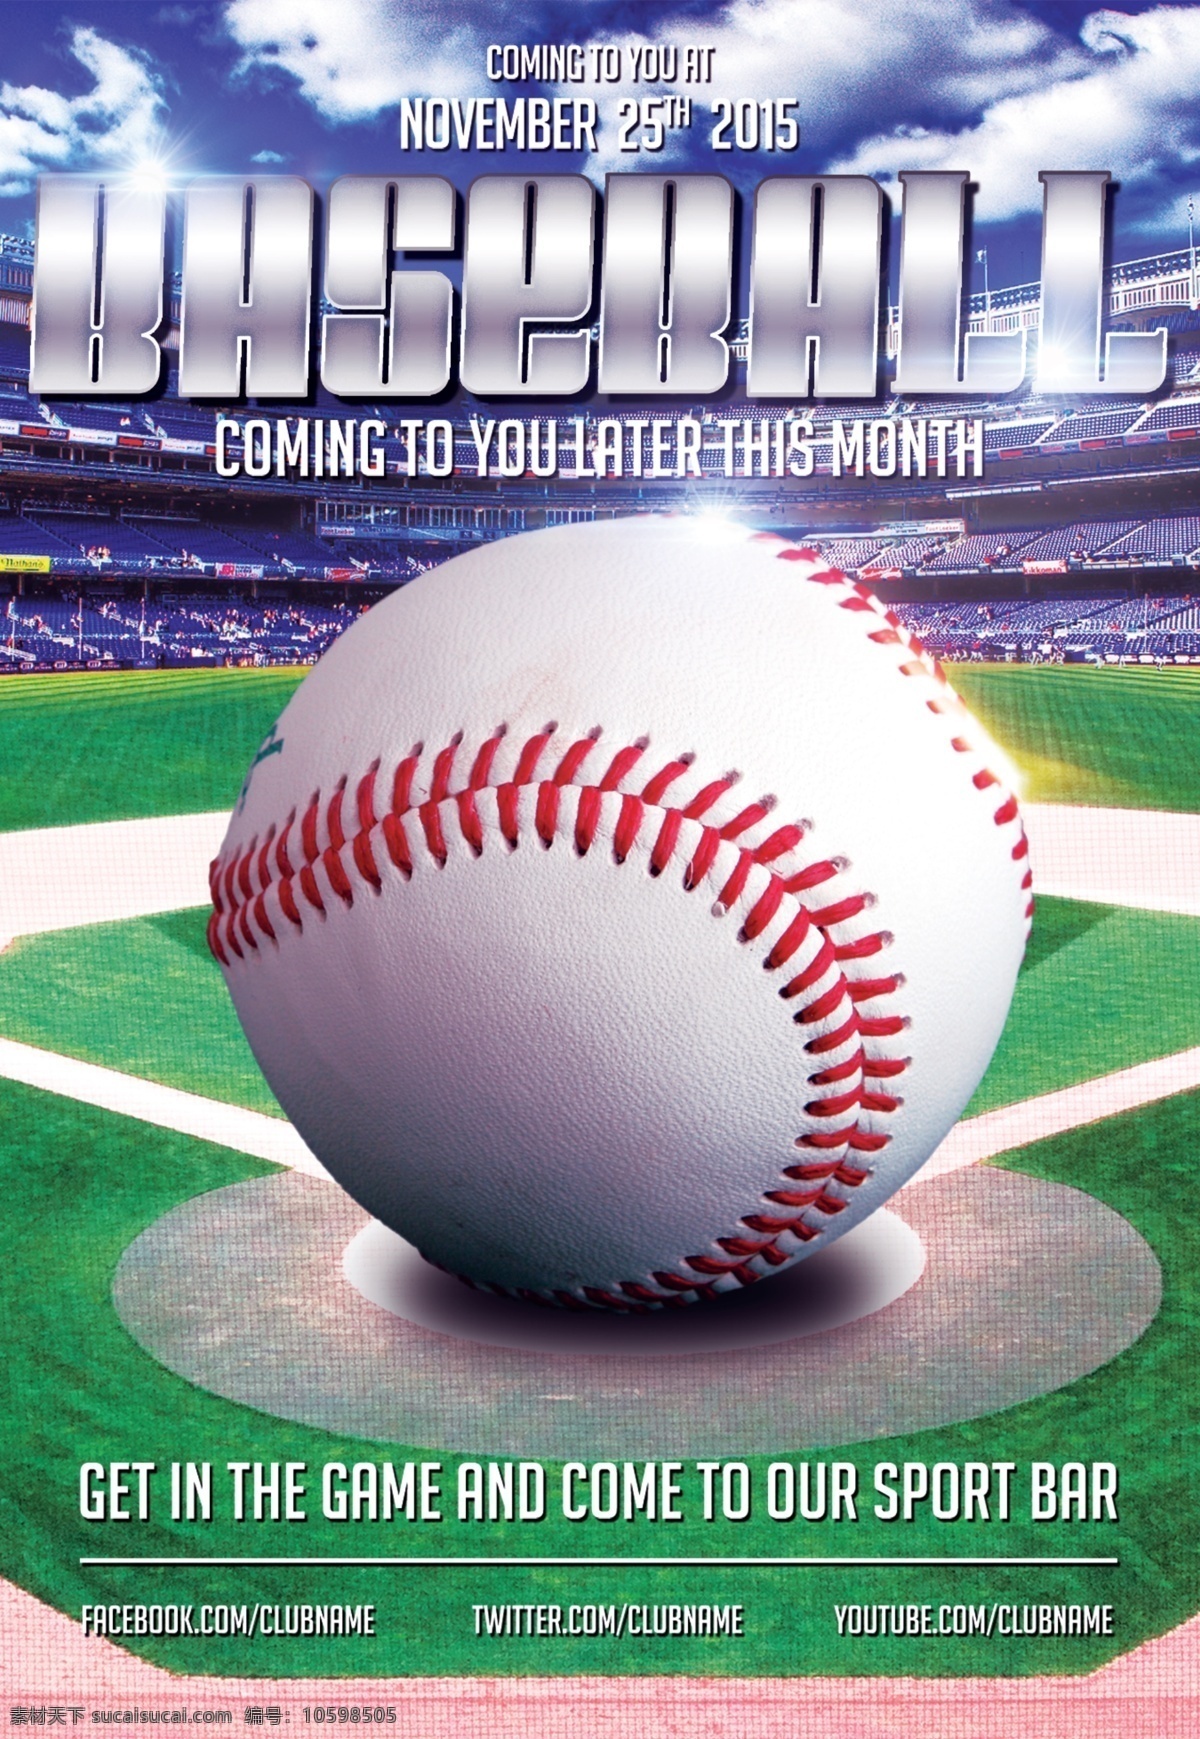 棒球特写 棒球海报 棒球运动 棒球体育 棒球训练班 美国棒球 棒球比赛 棒球比赛海报 棒球广告 棒球场 棒球队 棒球棍 棒球卡通 棒球运动员 棒球 田径运动会 校园运动会 夏季运动会